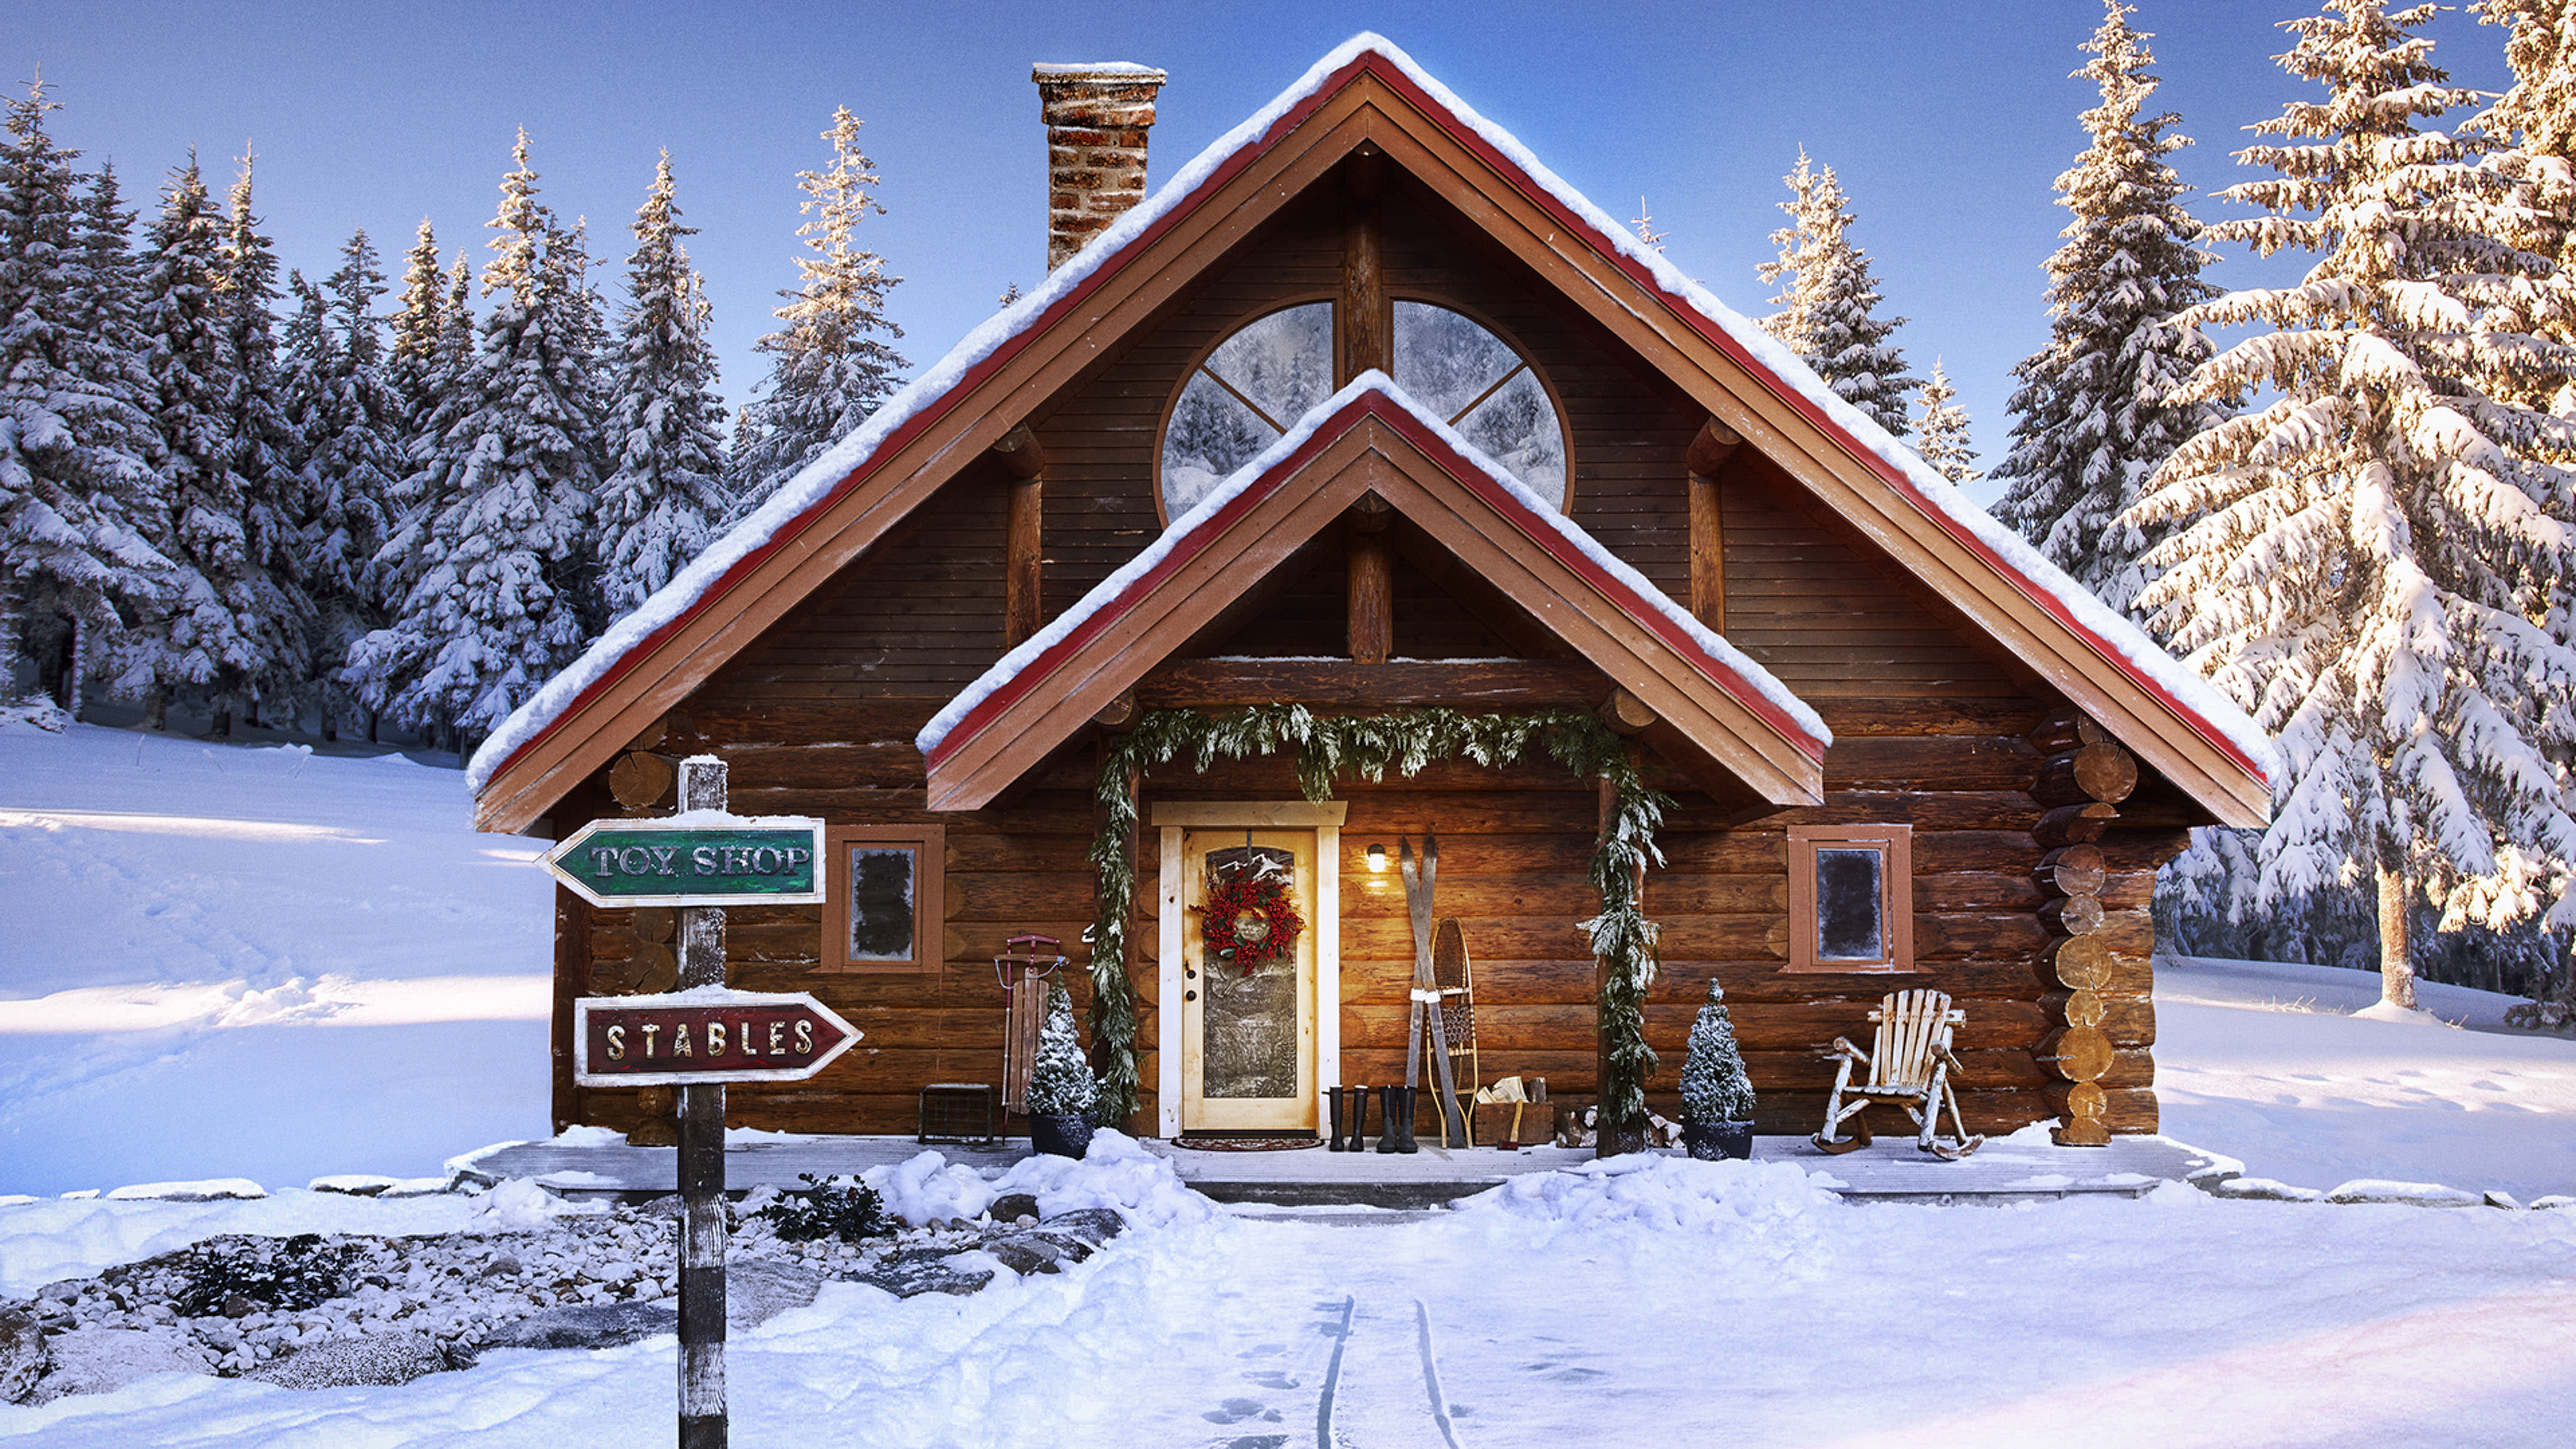 Villaggio Babbo Natale Polo Nord.La Casetta Di Babbo Natale Esiste Ed E In Vendita